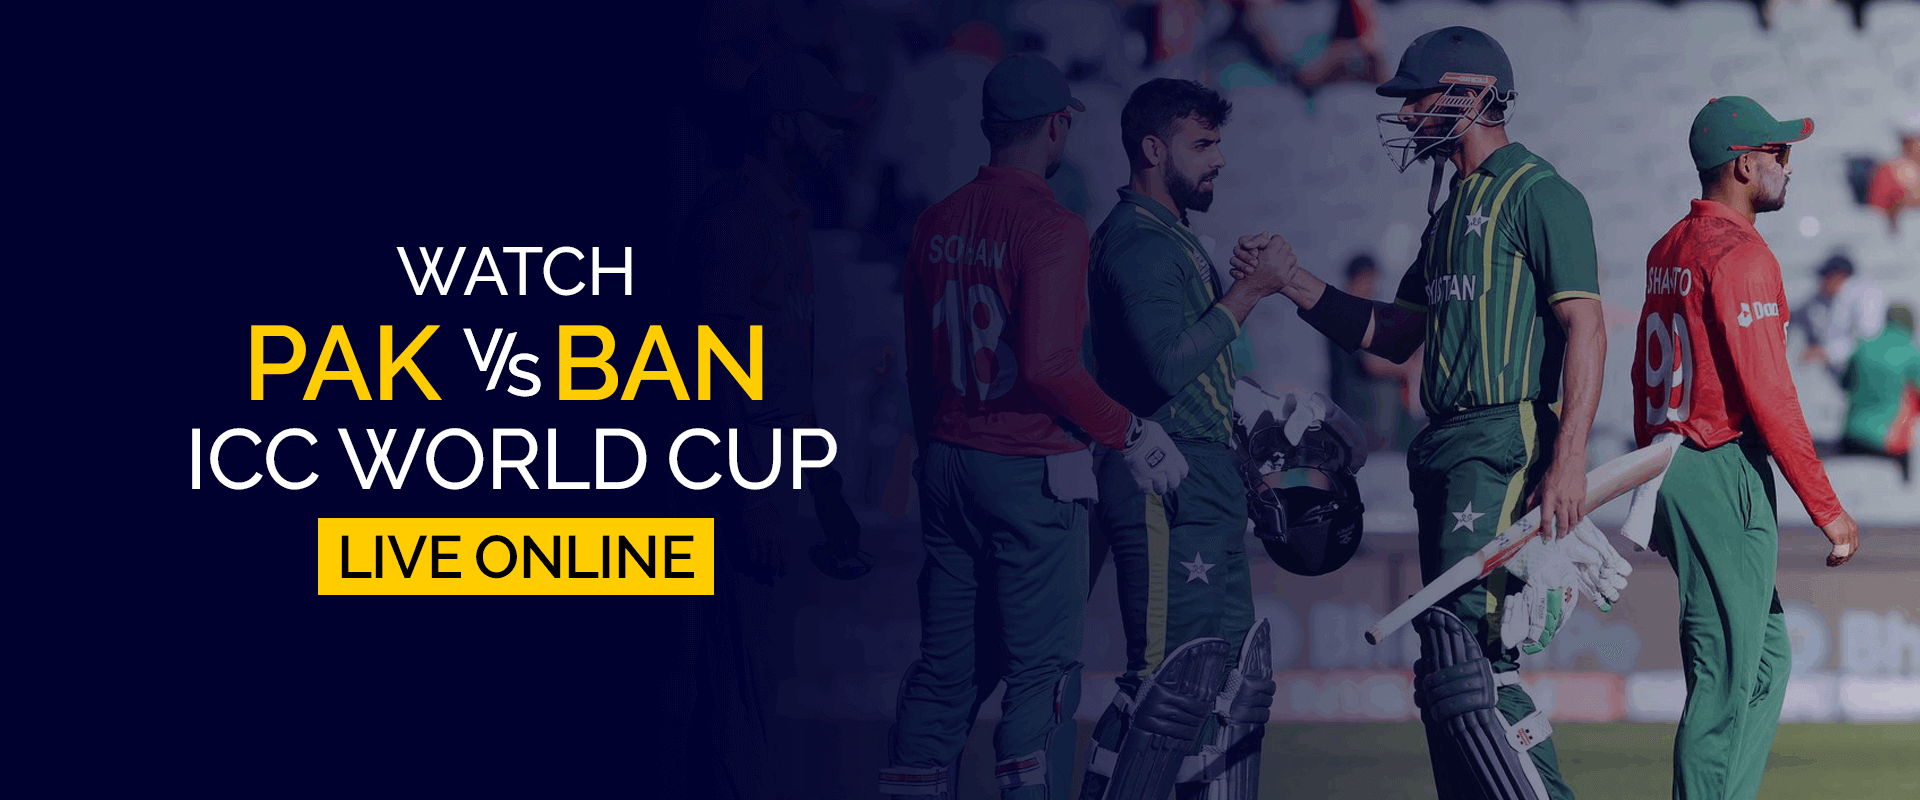 Guarda la Coppa del mondo ICC Pakistan vs Bangladesh in diretta online